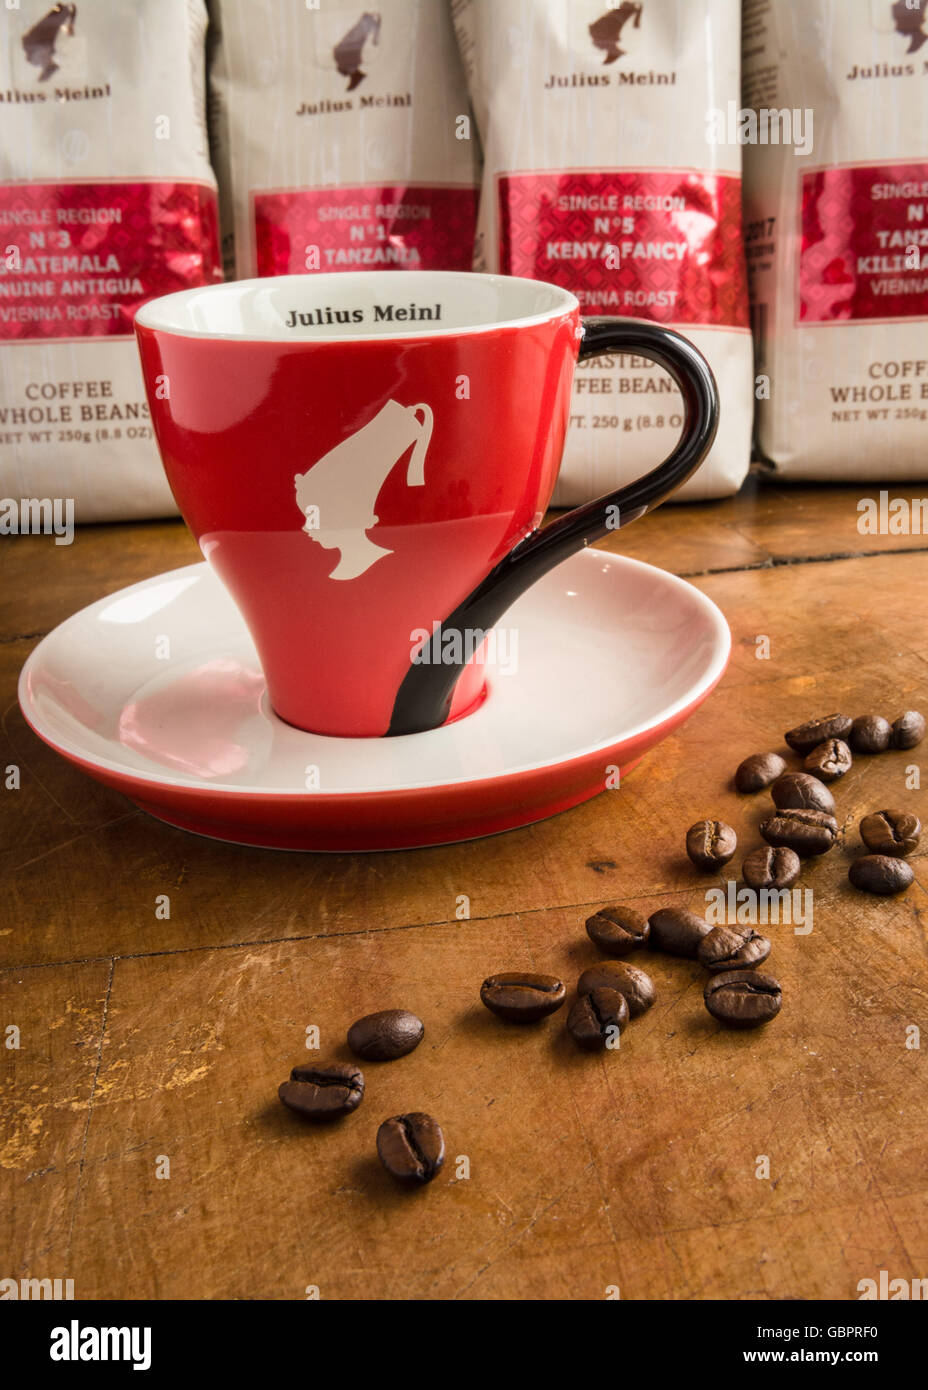 Julius Meinl Kaffee Tasse und ganze Kaffeebohnen Stockfotografie - Alamy